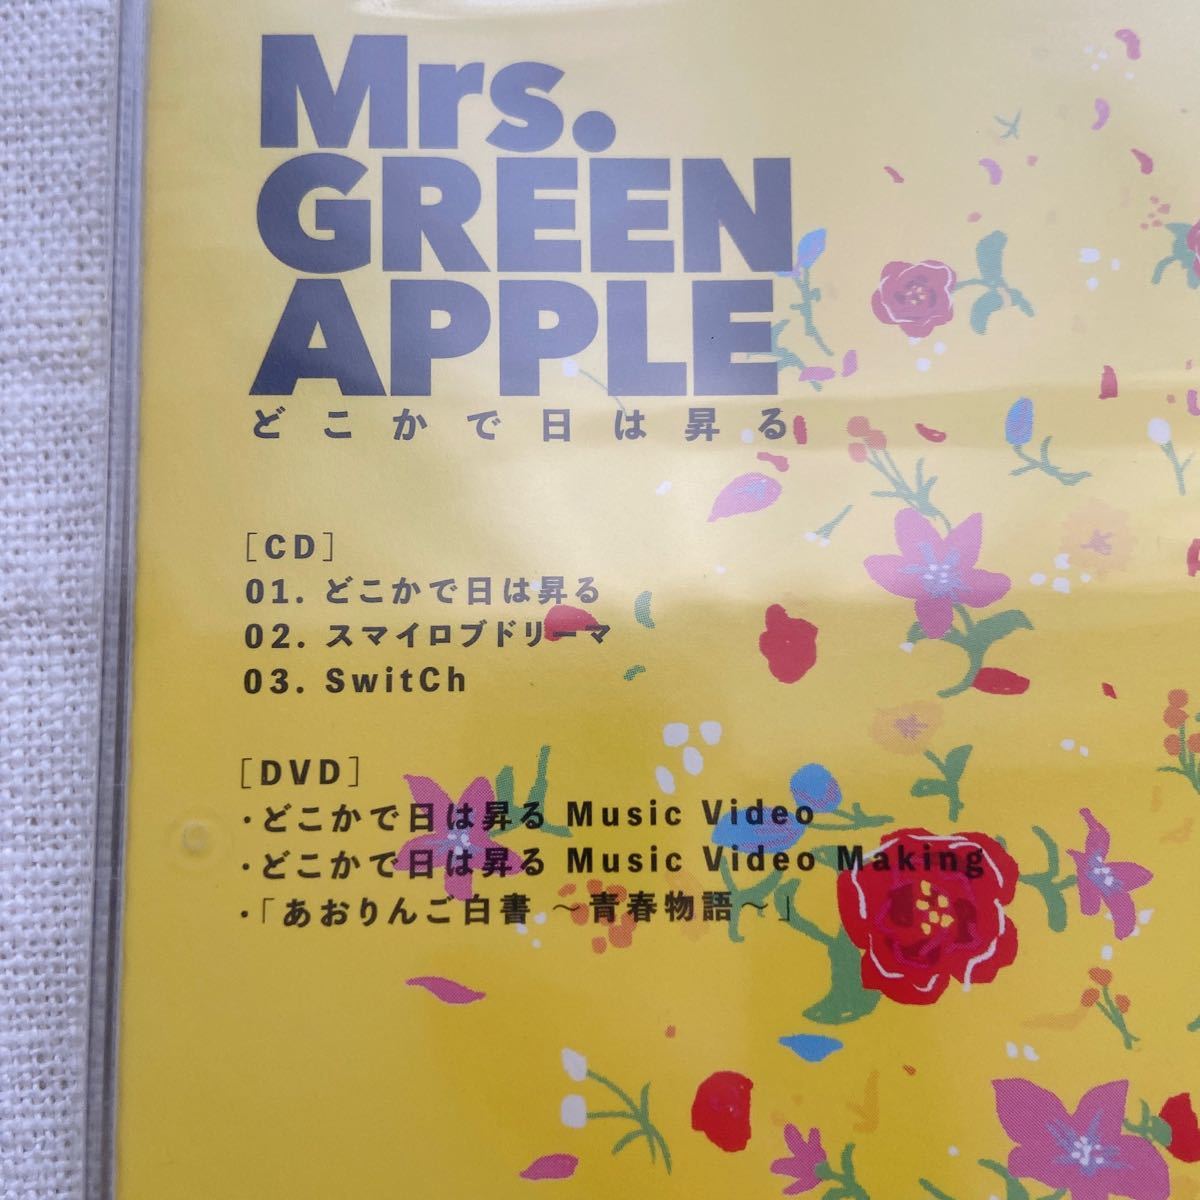 Mrs. GREEN APPLE どこかで日は昇る (初回限定盤) (DVD付